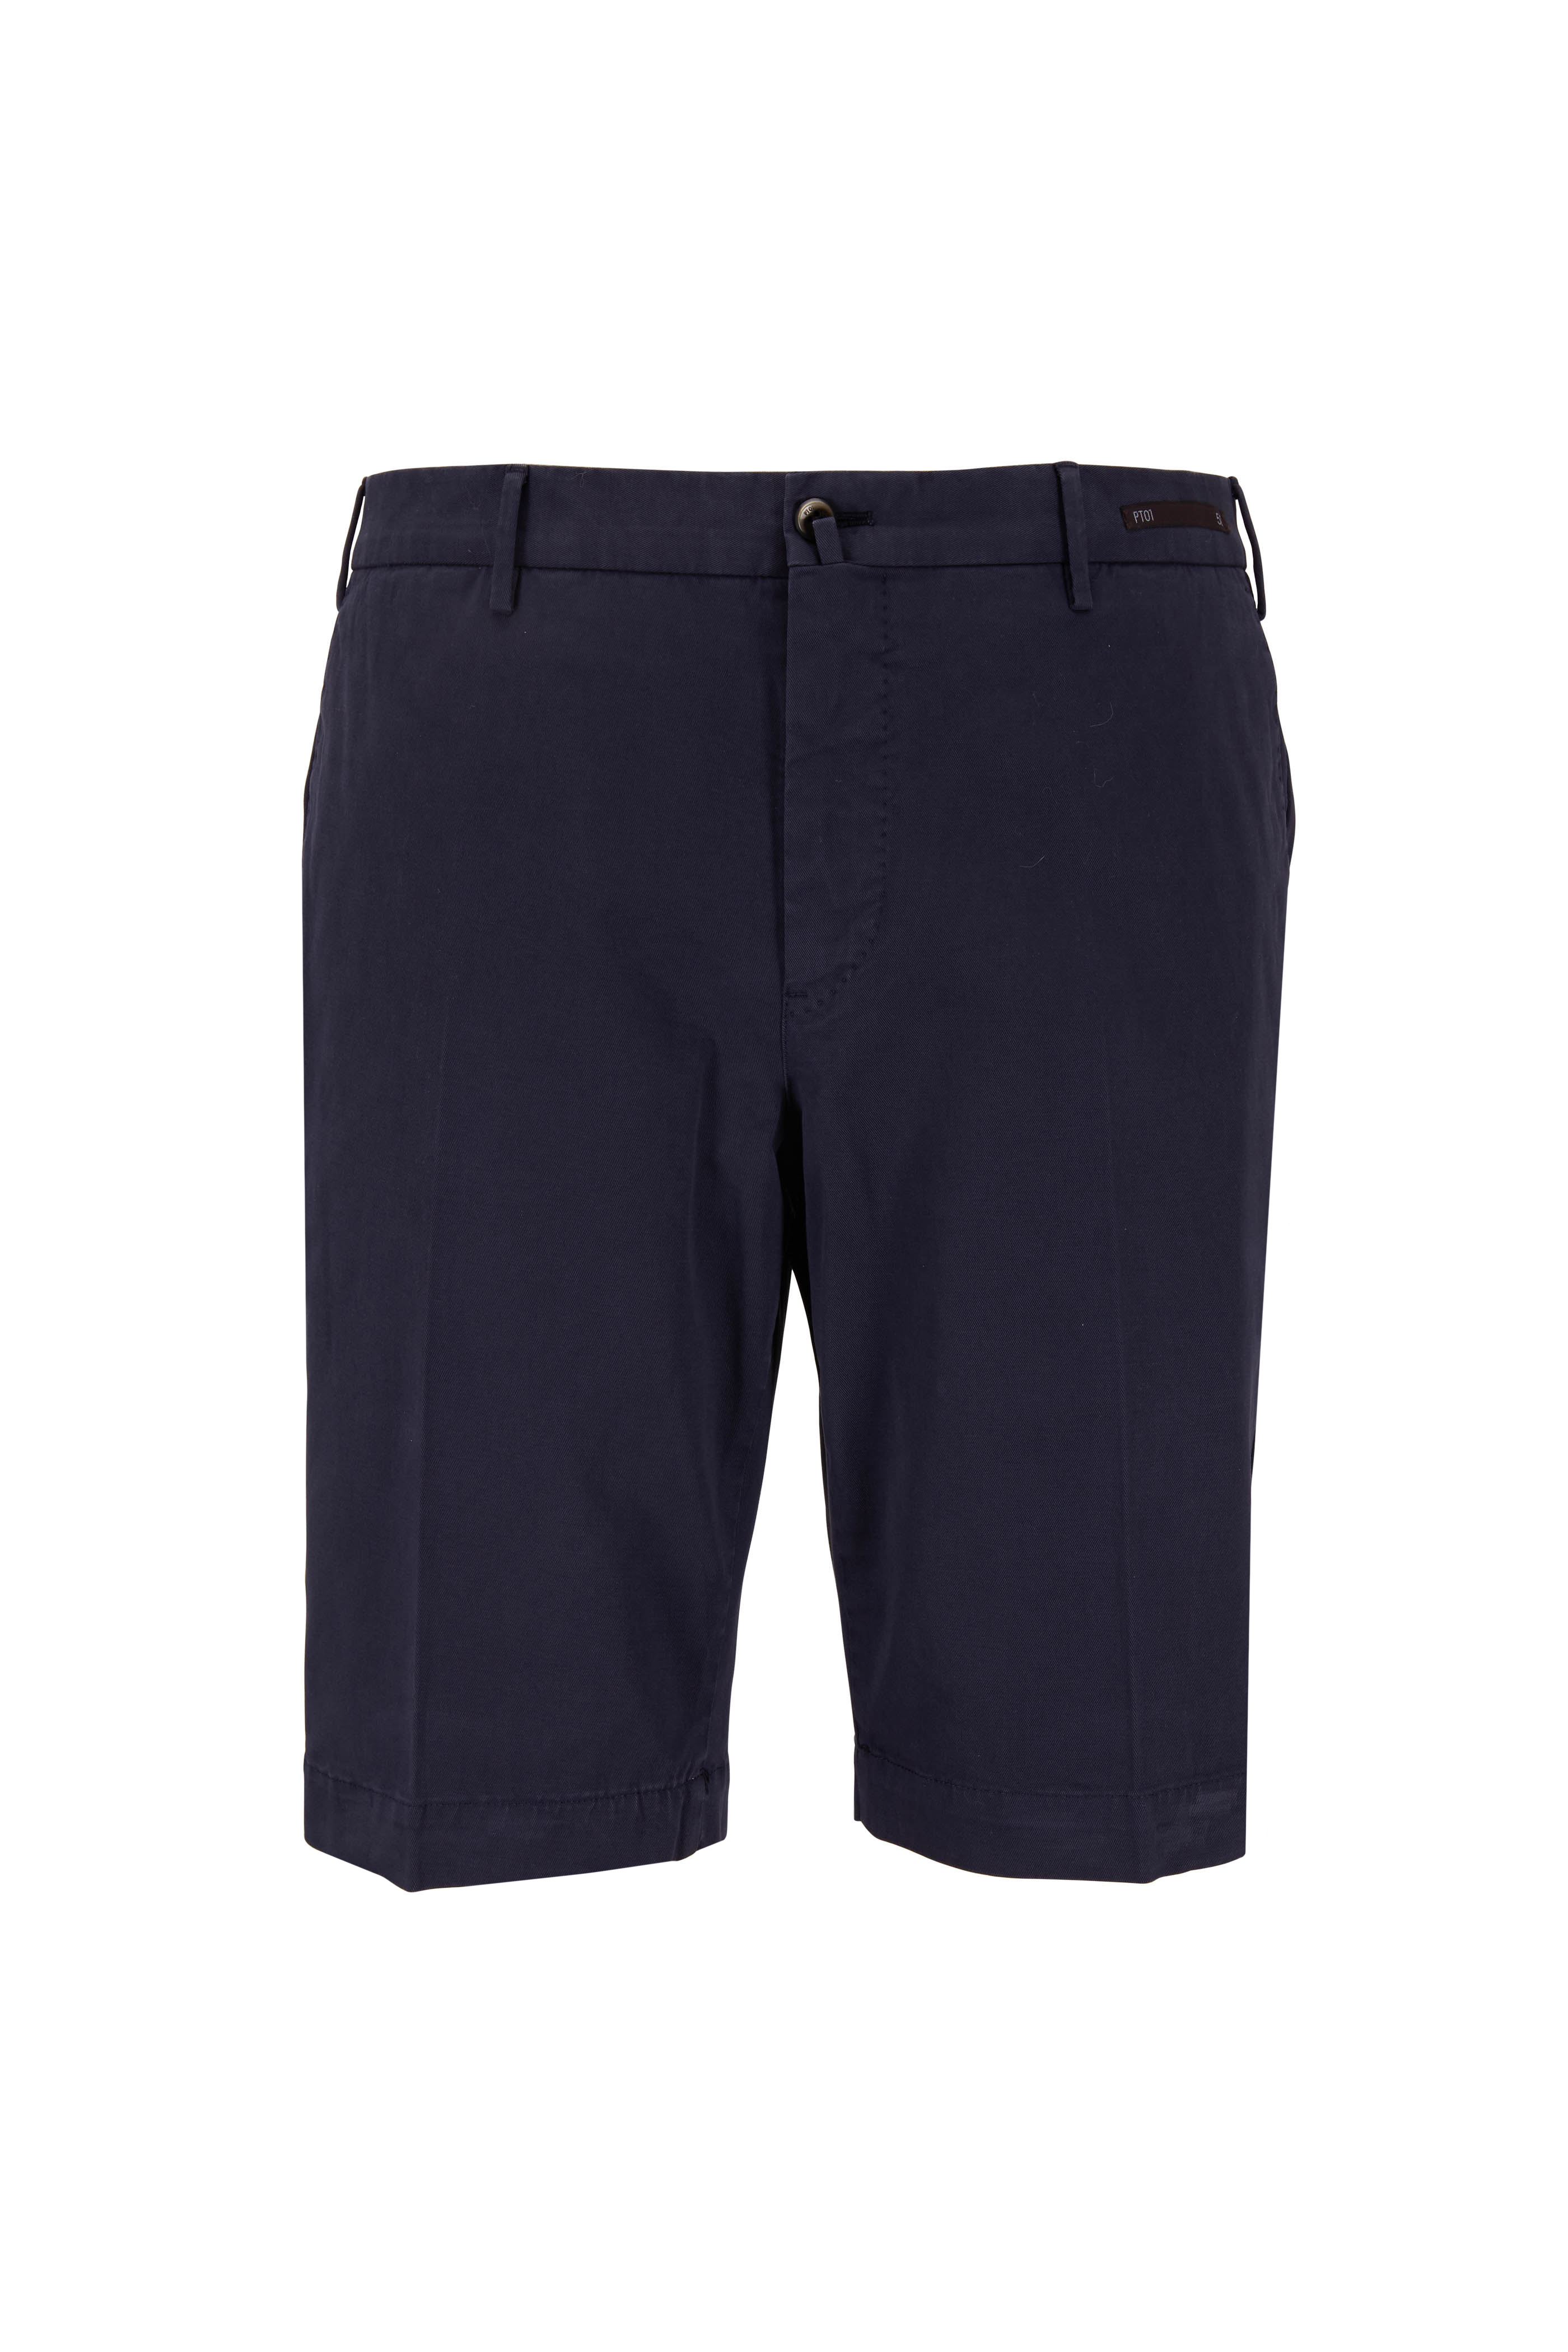 Brunello Cucinelli Navy Bermuda Shorts | Mitchell Stores